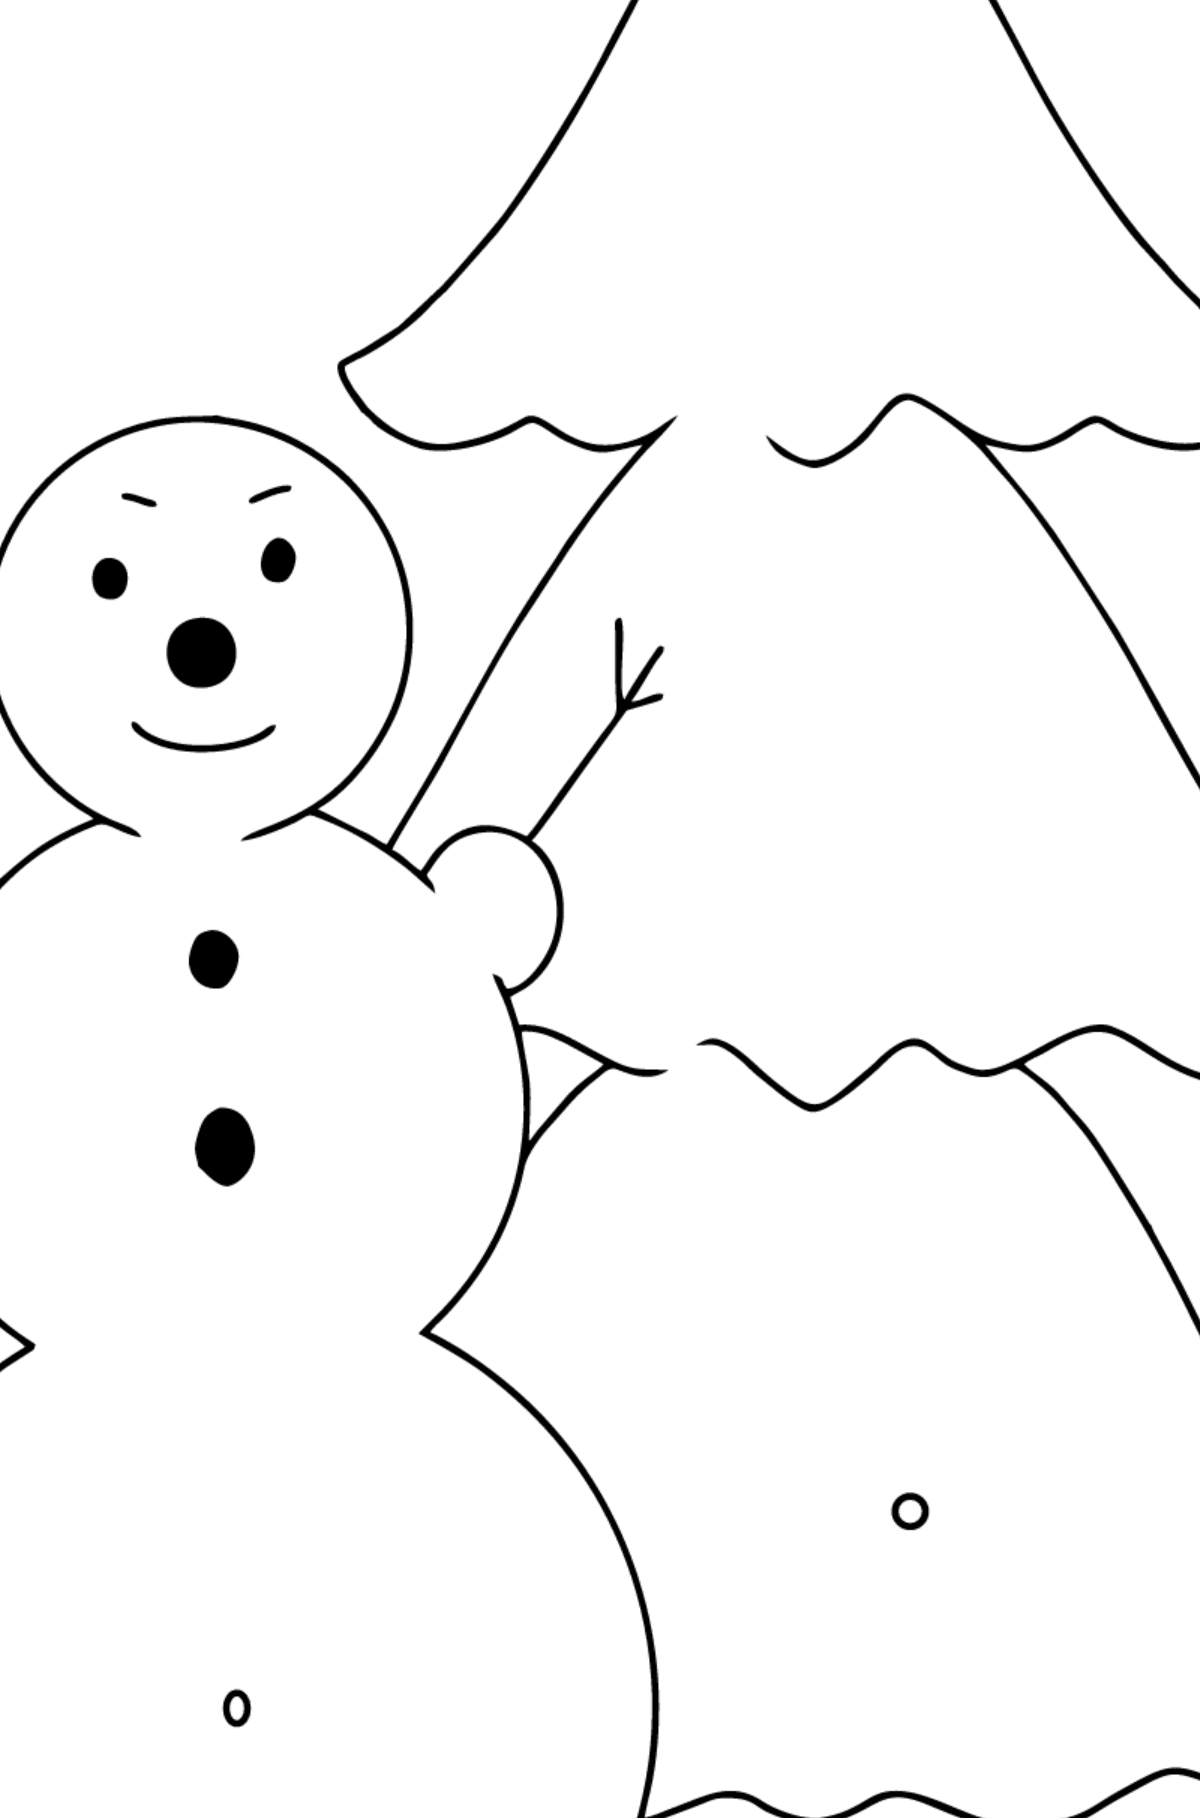 Tegning til farvning snemand og træ (let) - farvelægning side efter symboler og geometriske former for børn